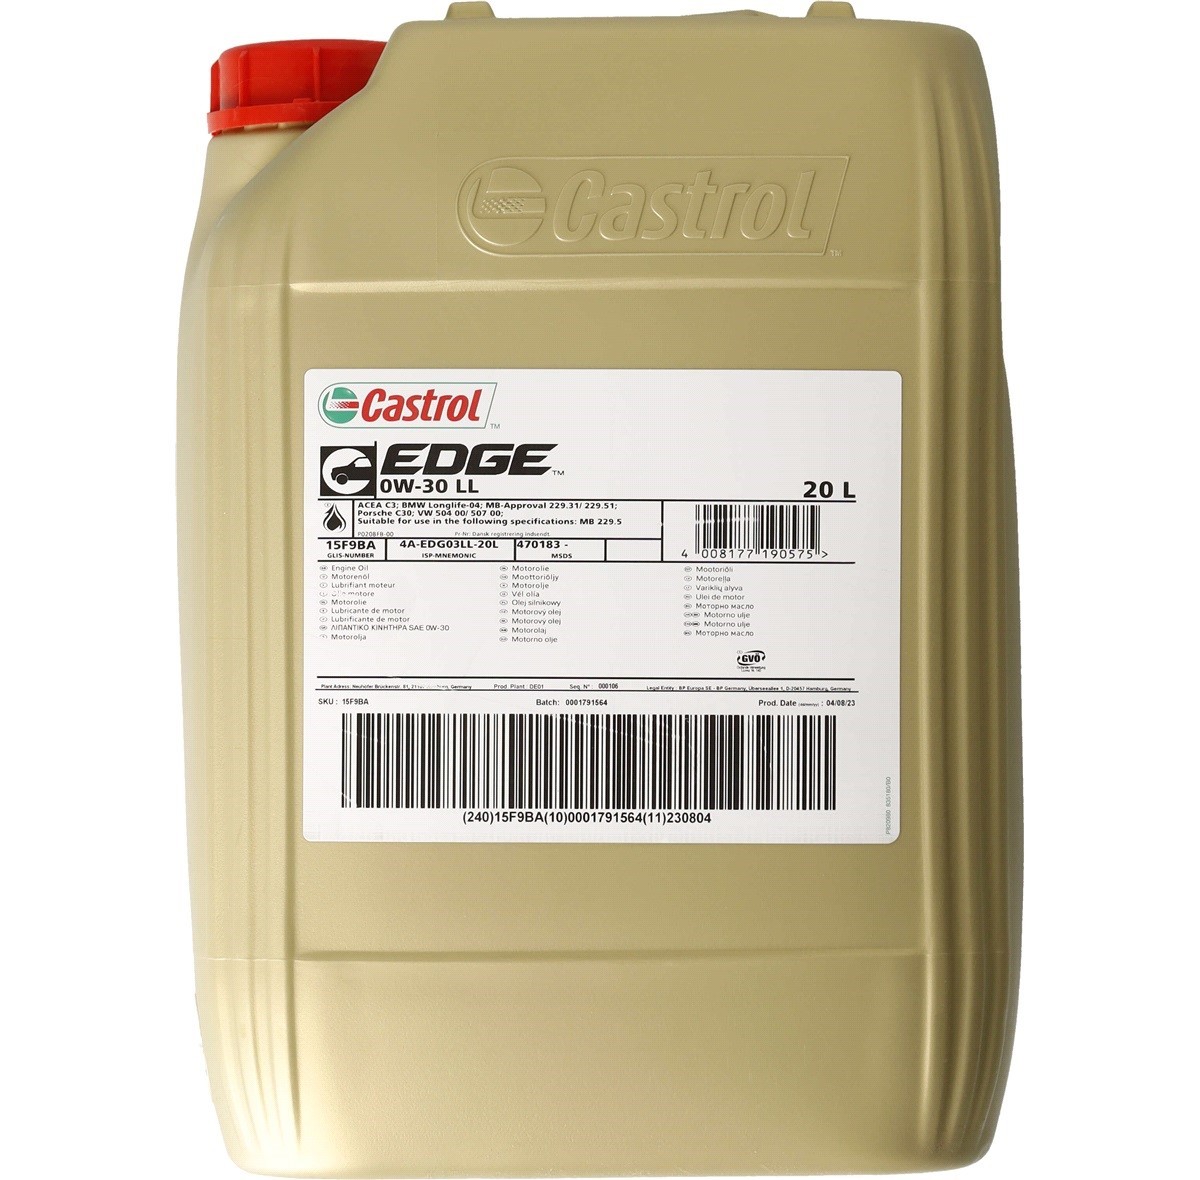 Car oil 0W-30 longlife diesel - 15F9BA CASTROL EDGE, LL